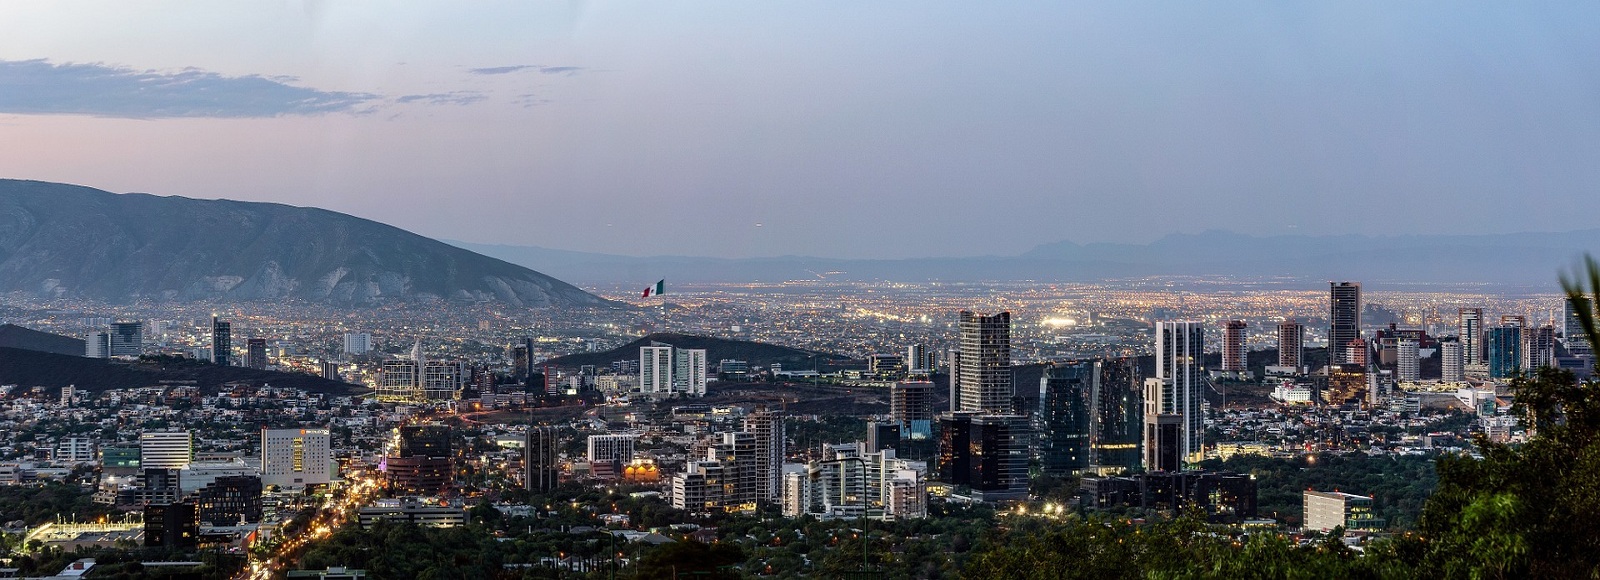 Ofertas de Traslados en Monterrey. Traslados económicos en Monterrey 